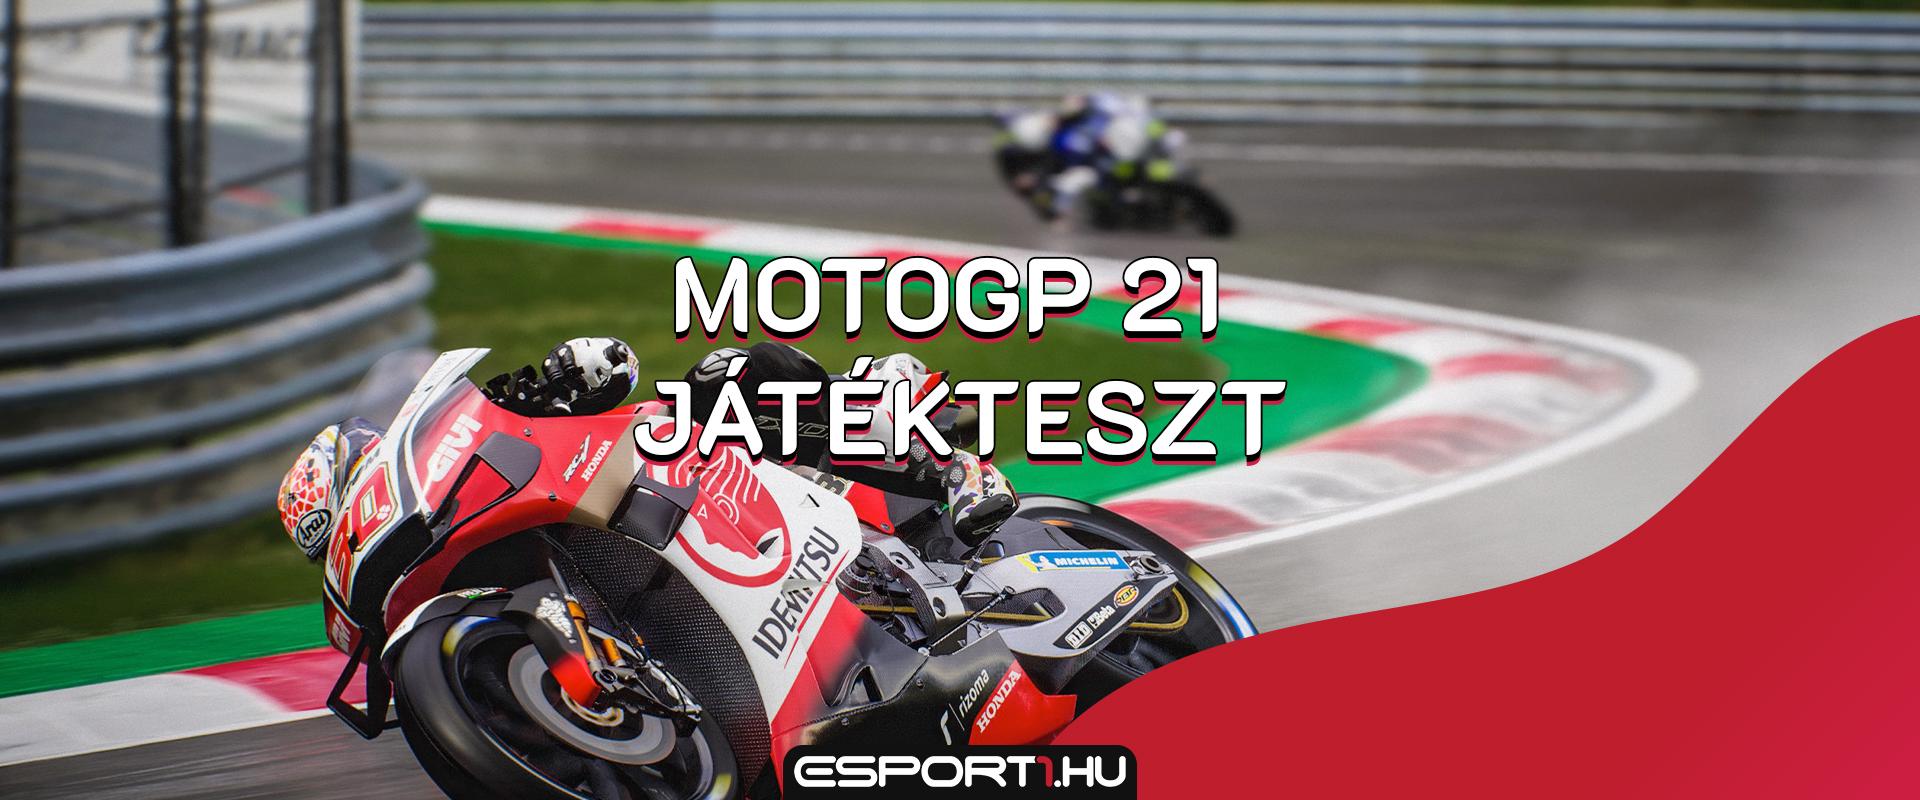 Gaming: MotoGP 21 teszt, pattanj nyeregbe és húzd meg a gázt!